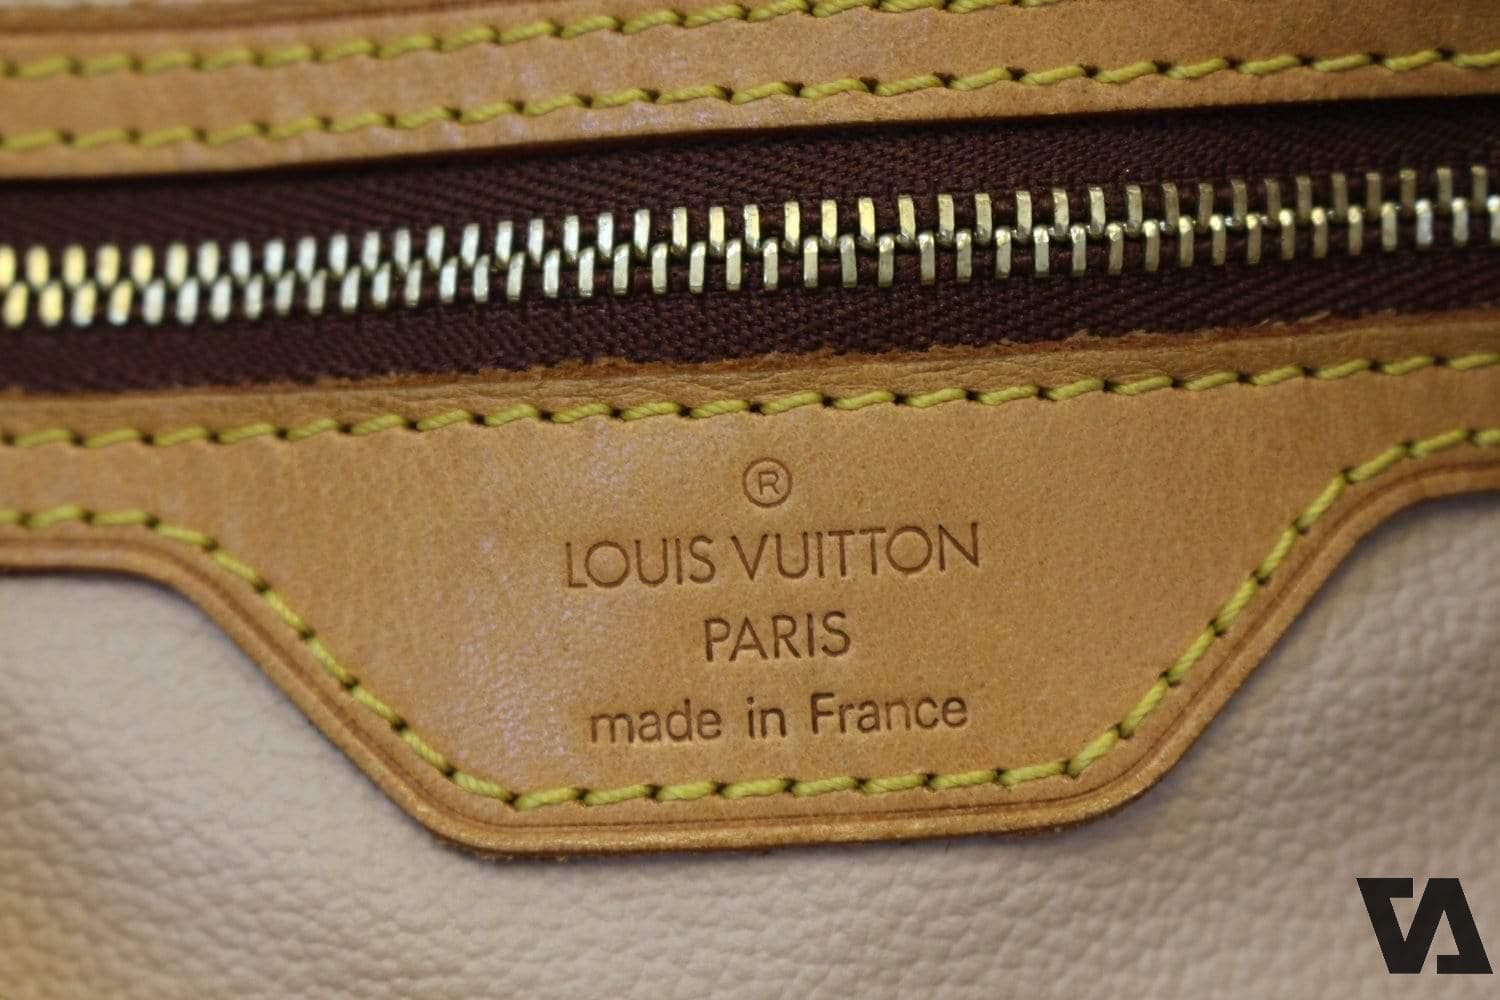 Cách check code Louis Vuitton nhanh chóng chính xác nhất  Việt Anh Store